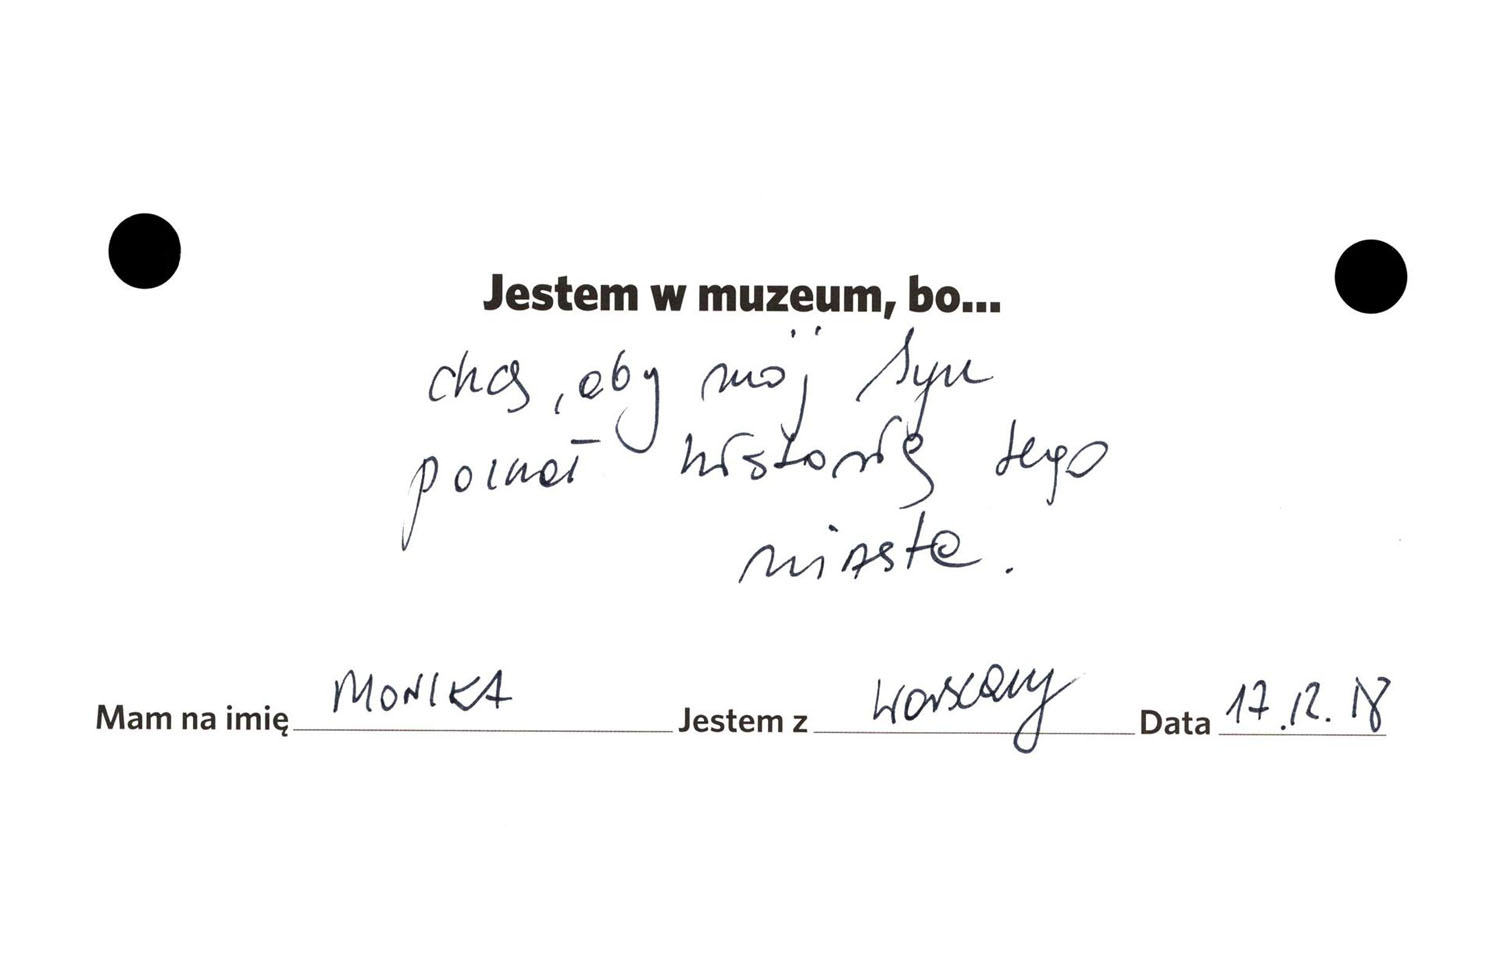 Karteczka z napisem Jestem w muzeum, bo... chcę, aby mój syn poznał historię tego miasta. Monika, Warszawa, 17.12.18.